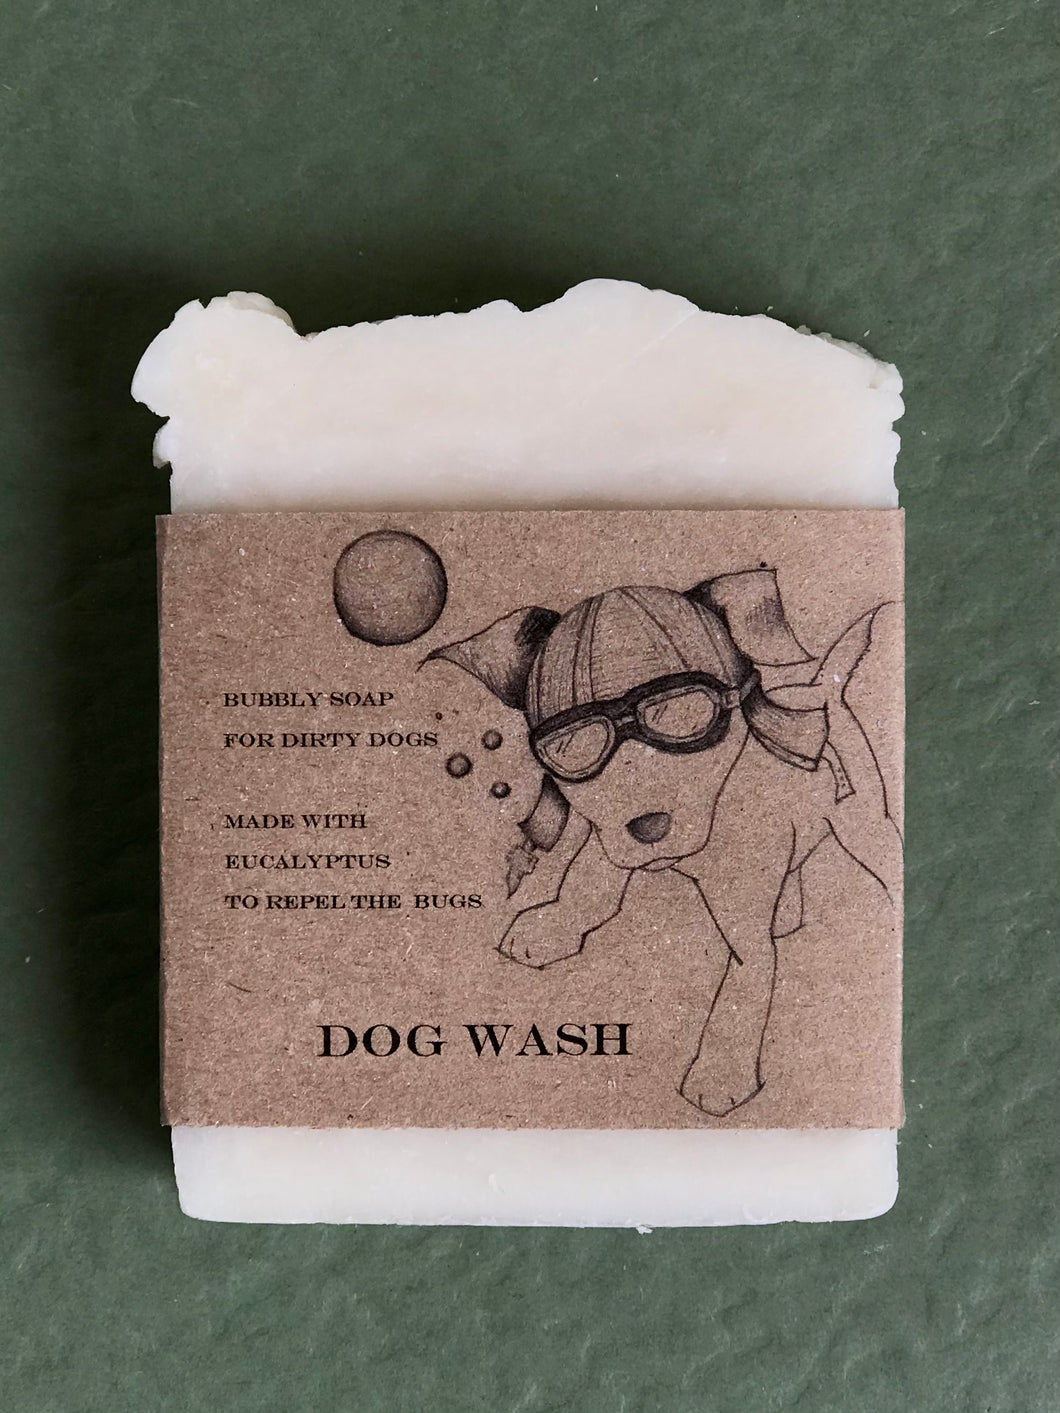 Dog Wash Shampoo Bar my